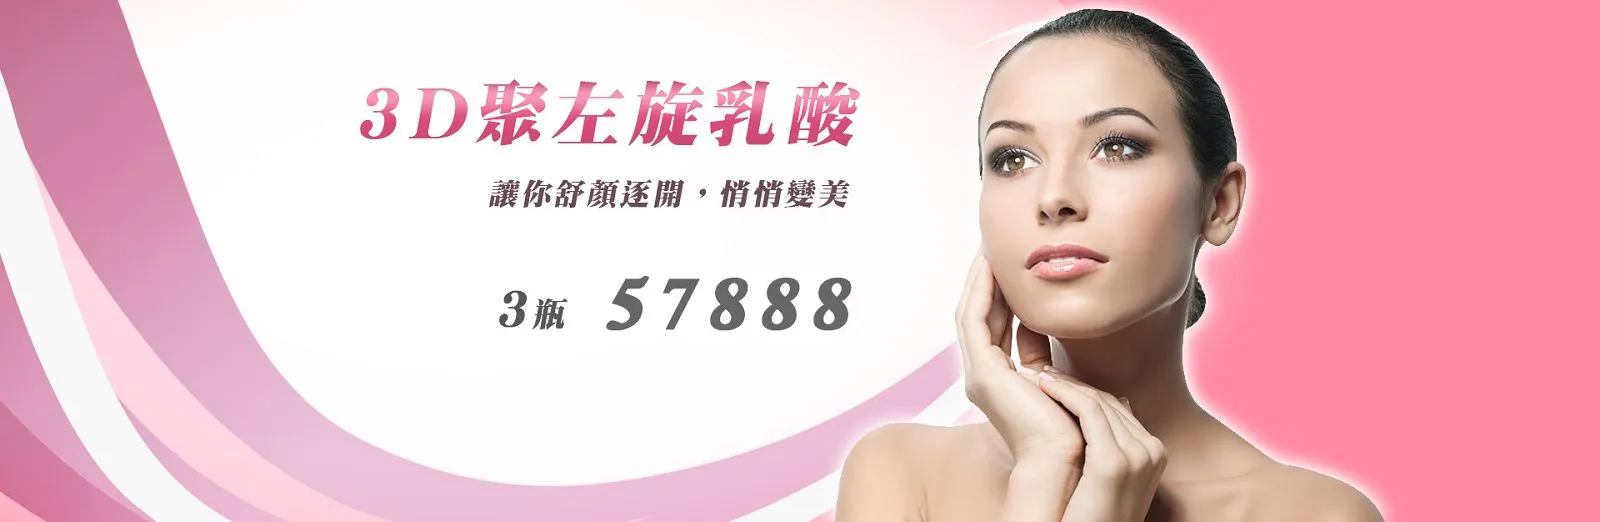 聚左旋乳酸|雷射除毛、台北醫學美容、台北皮膚科